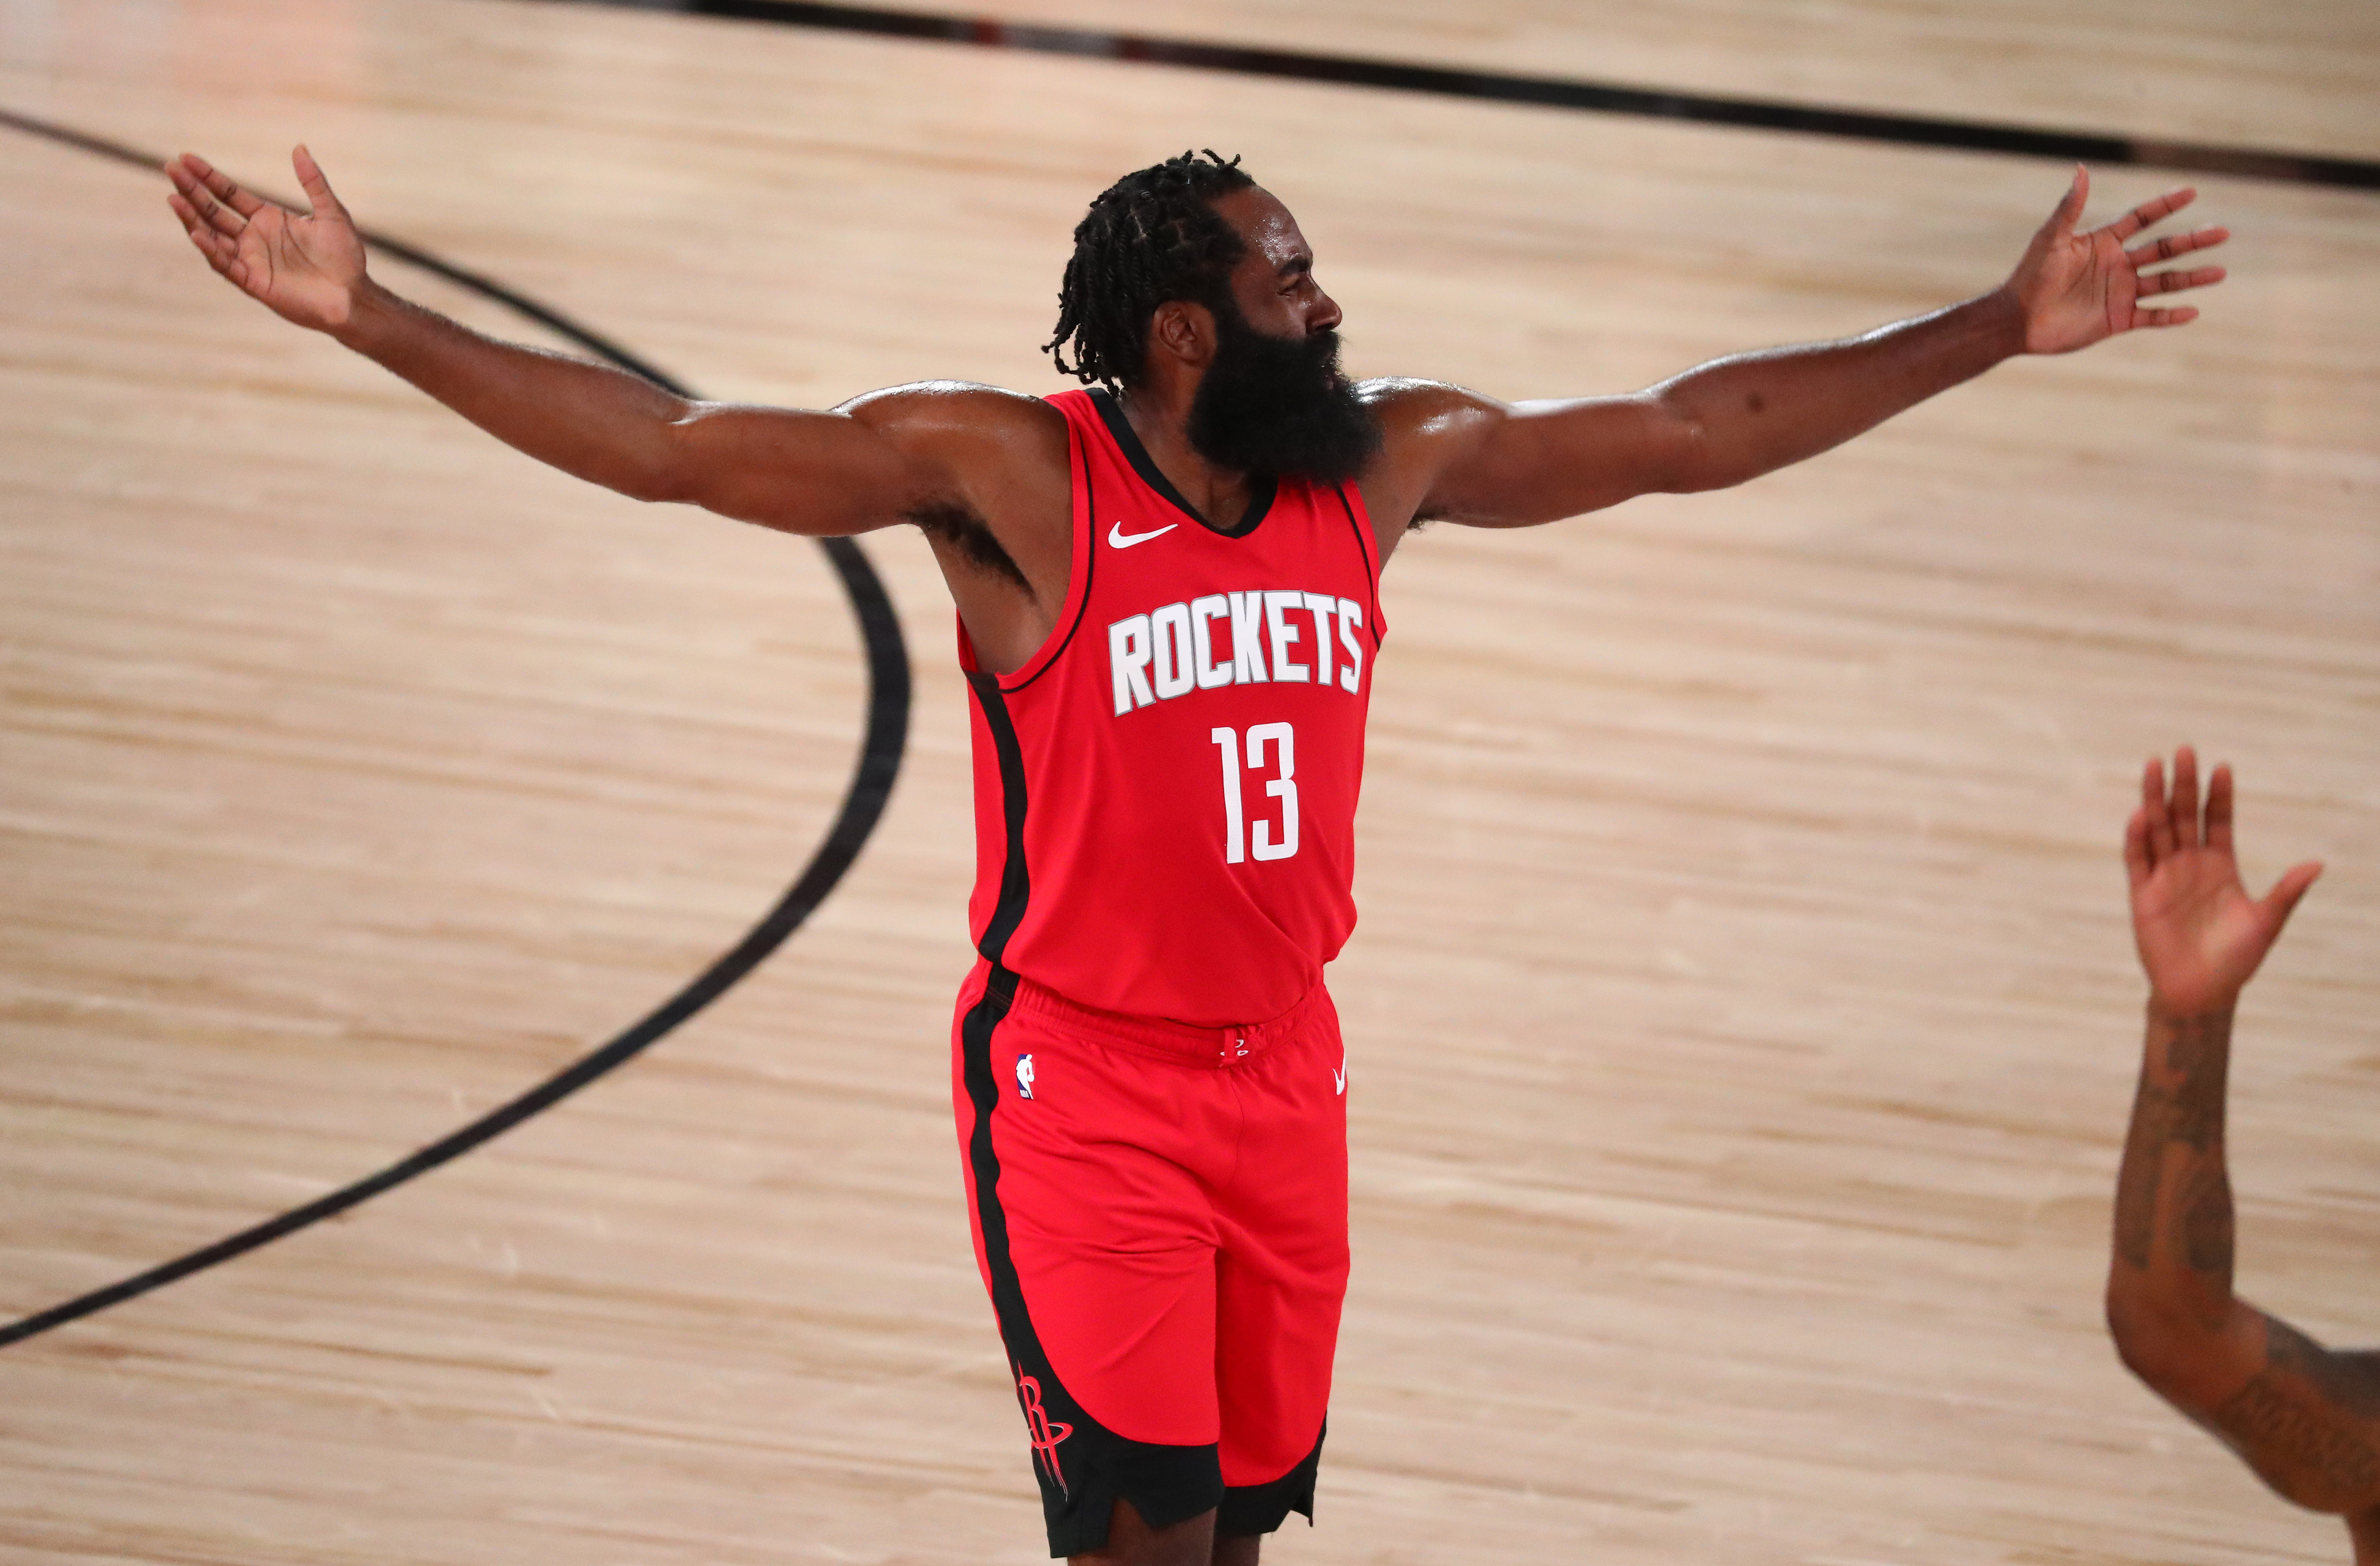 James Harden rechazó un nuevo contrato con Houston Rockets y lo seduce la posibilidad de jugar en Brooklyn Nets (USA TODAY Sports)